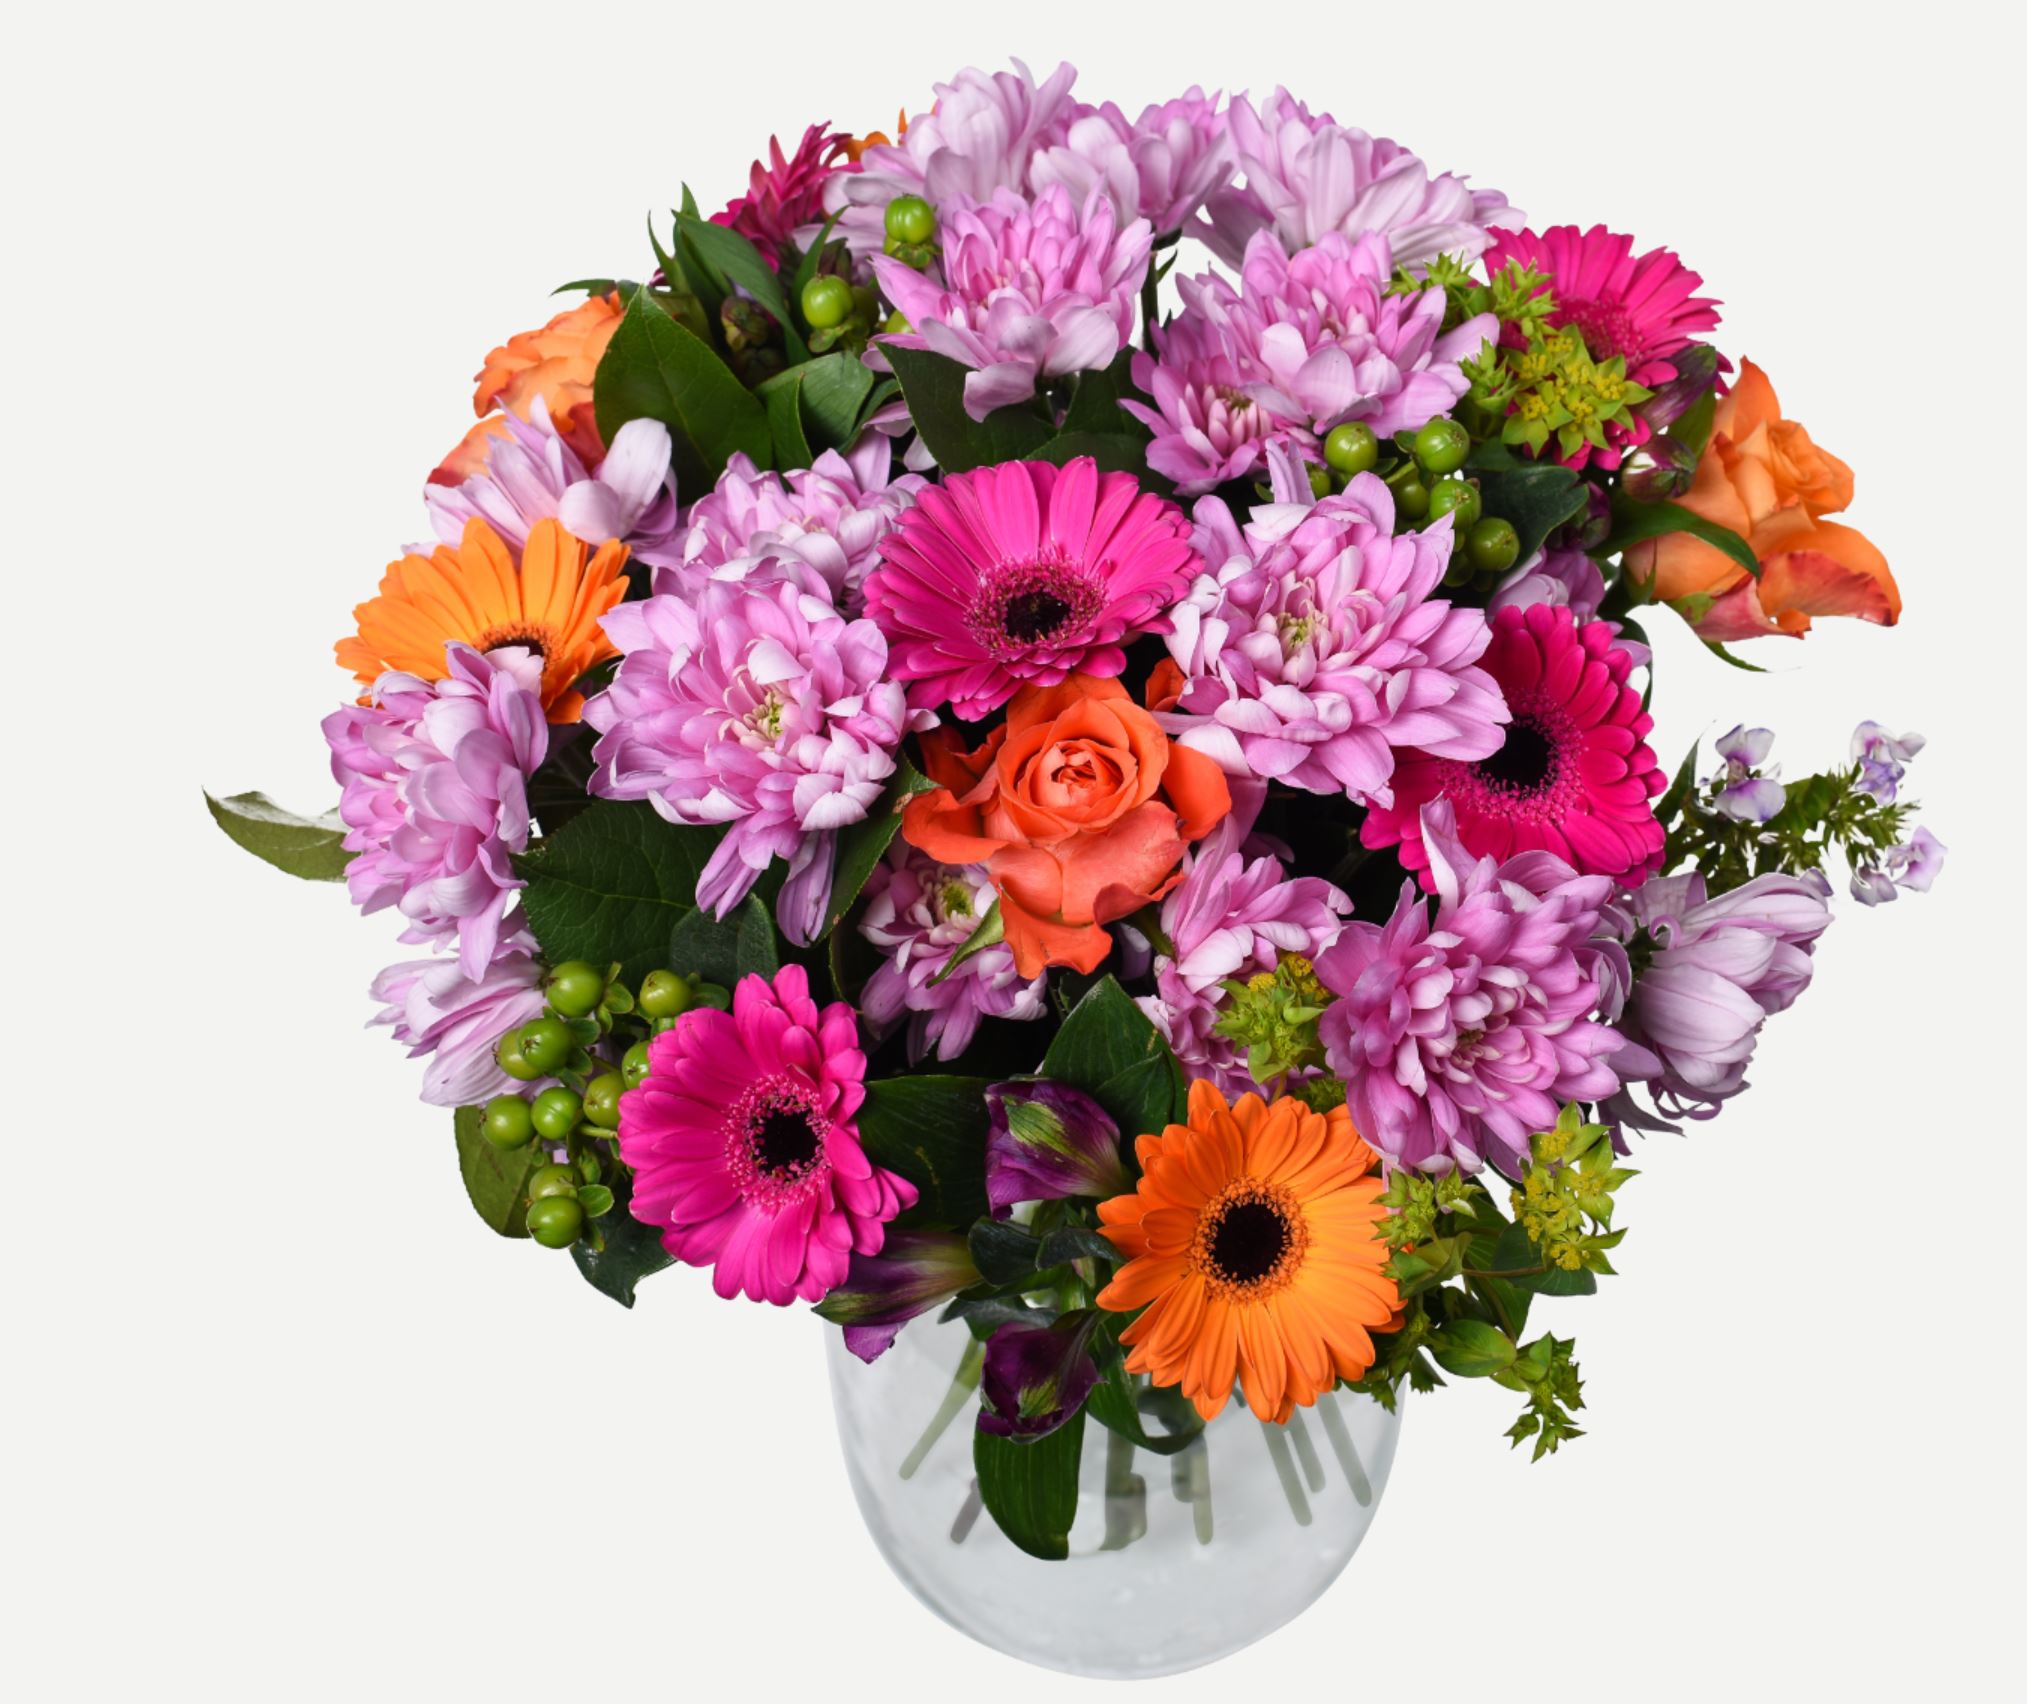 Send blomster: Bedste blomsterhandlere online